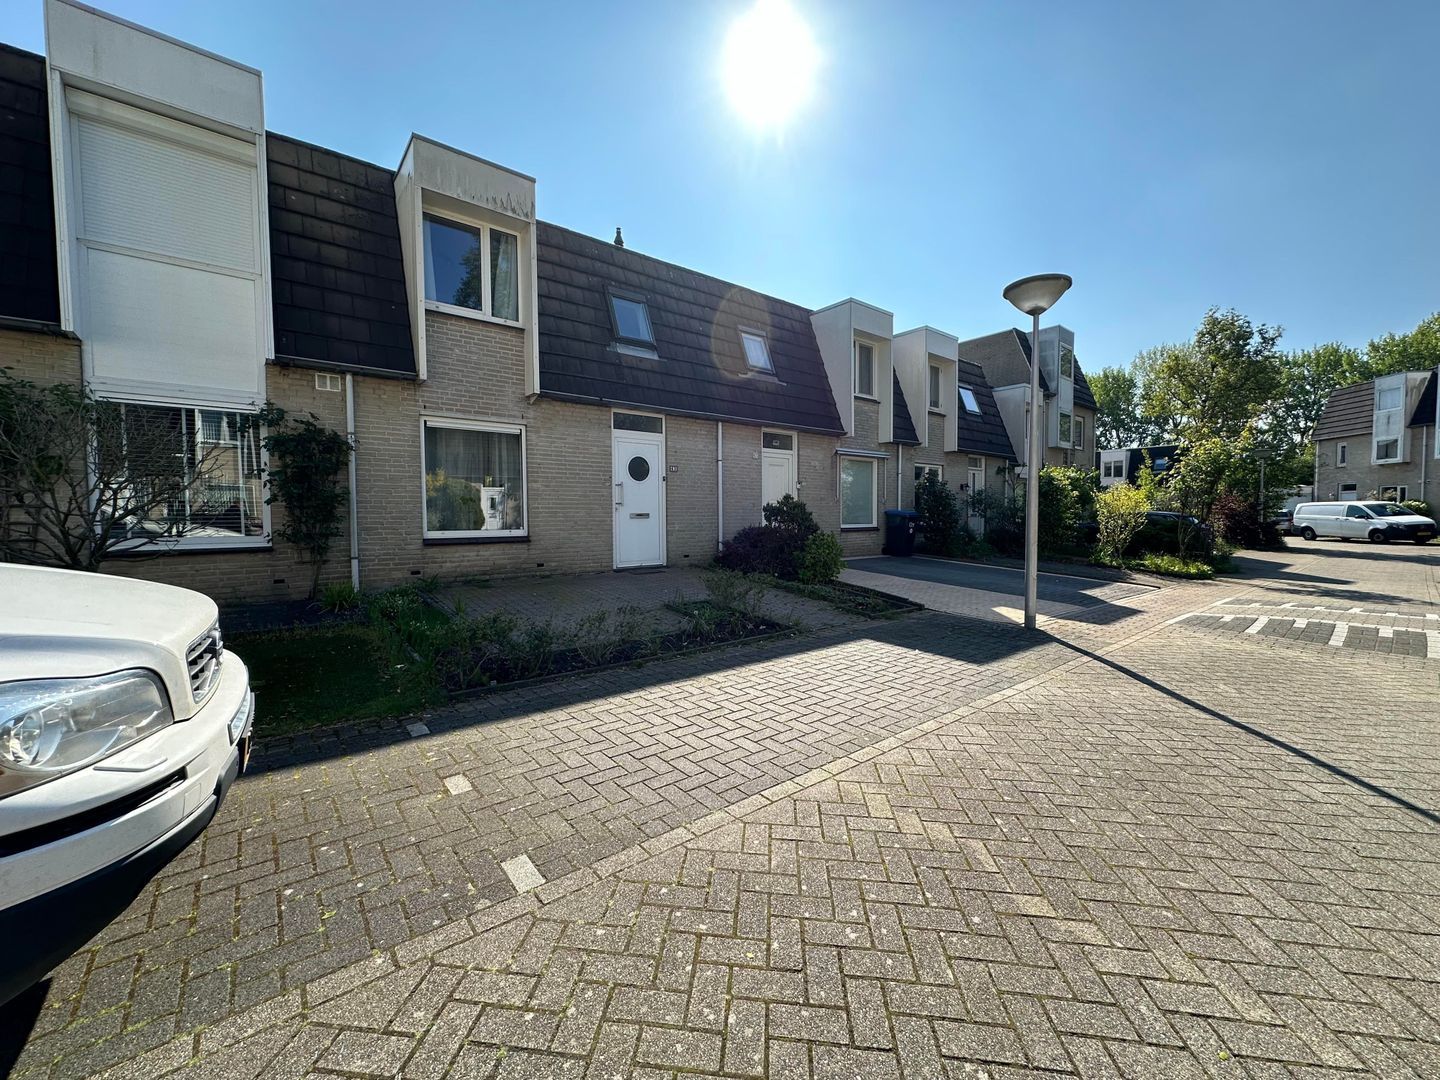 Bekijk foto 1/47 van house in Eindhoven